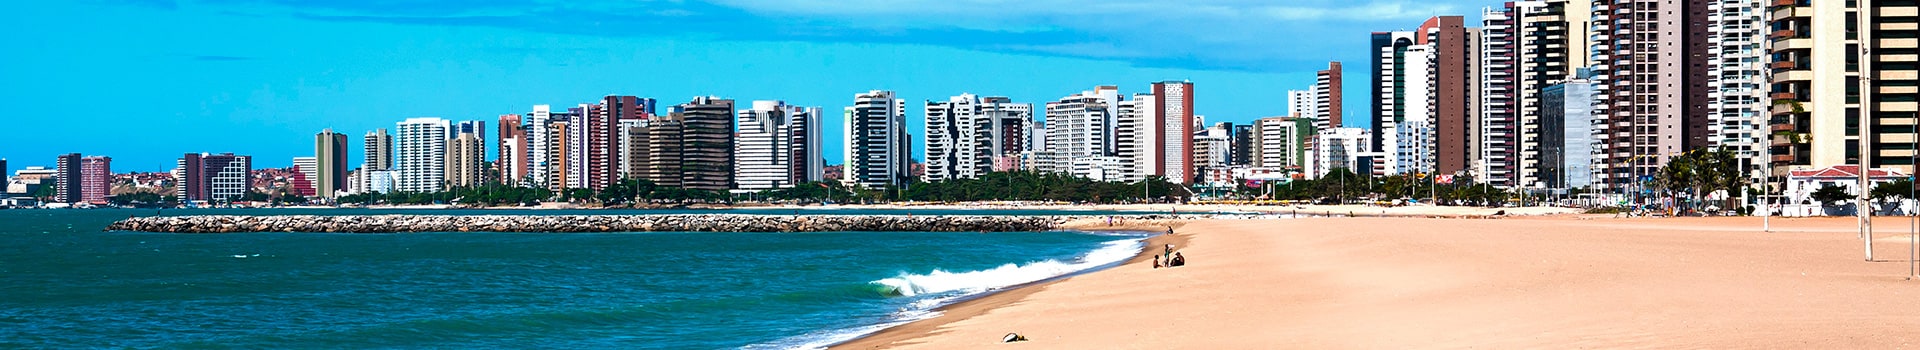 Goiania - Fortaleza